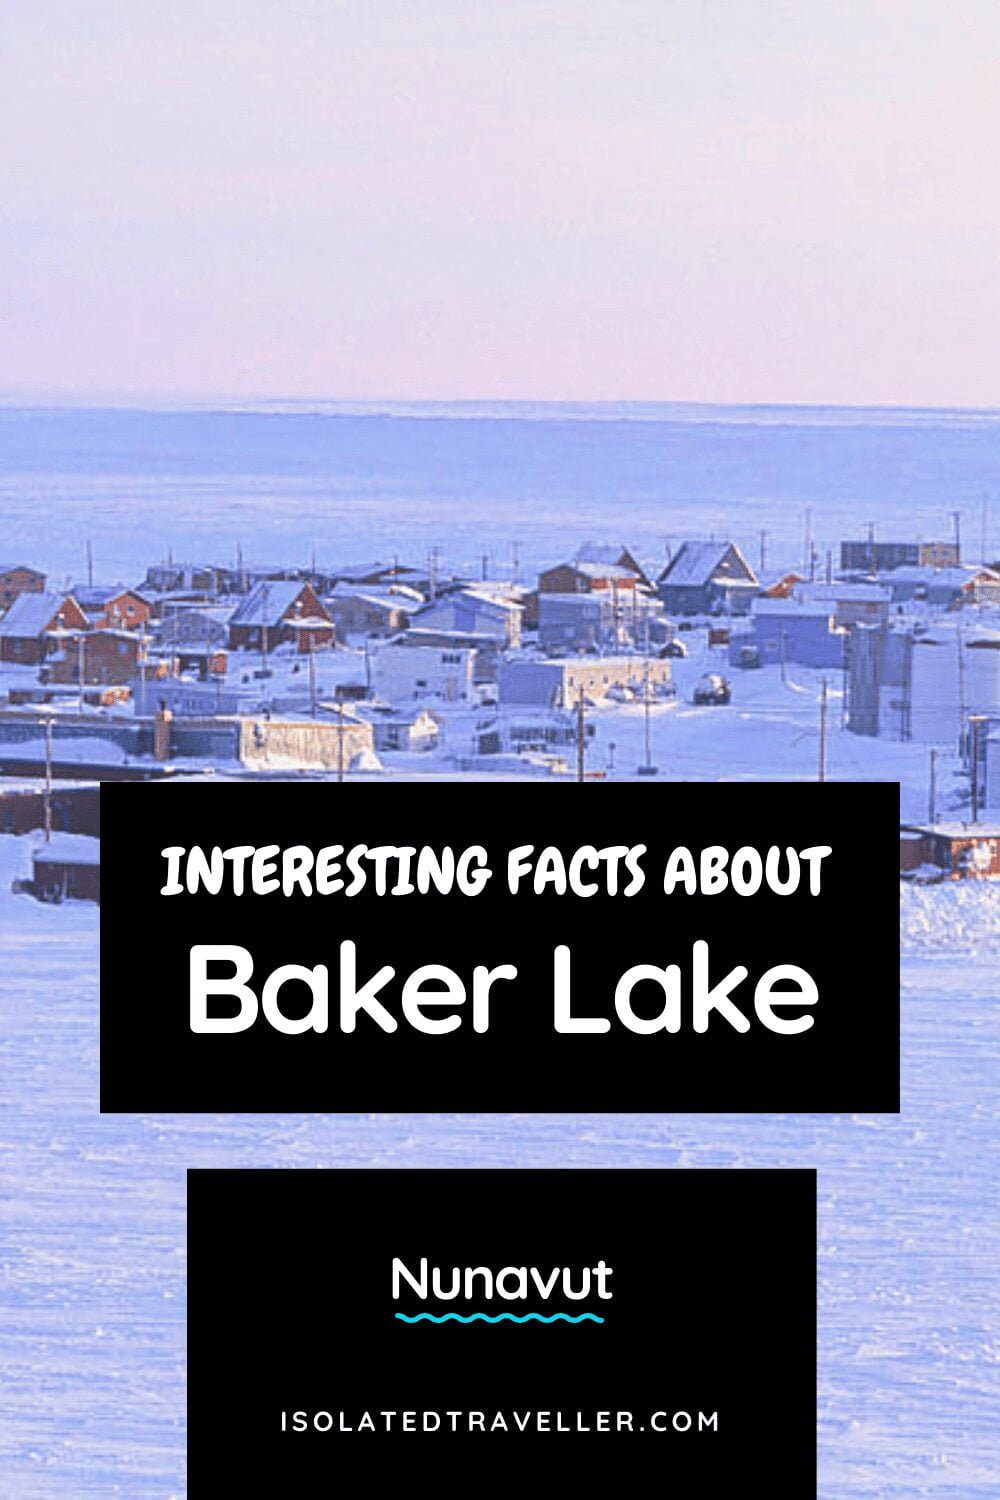 Facts About Baker Lake, Nunavut